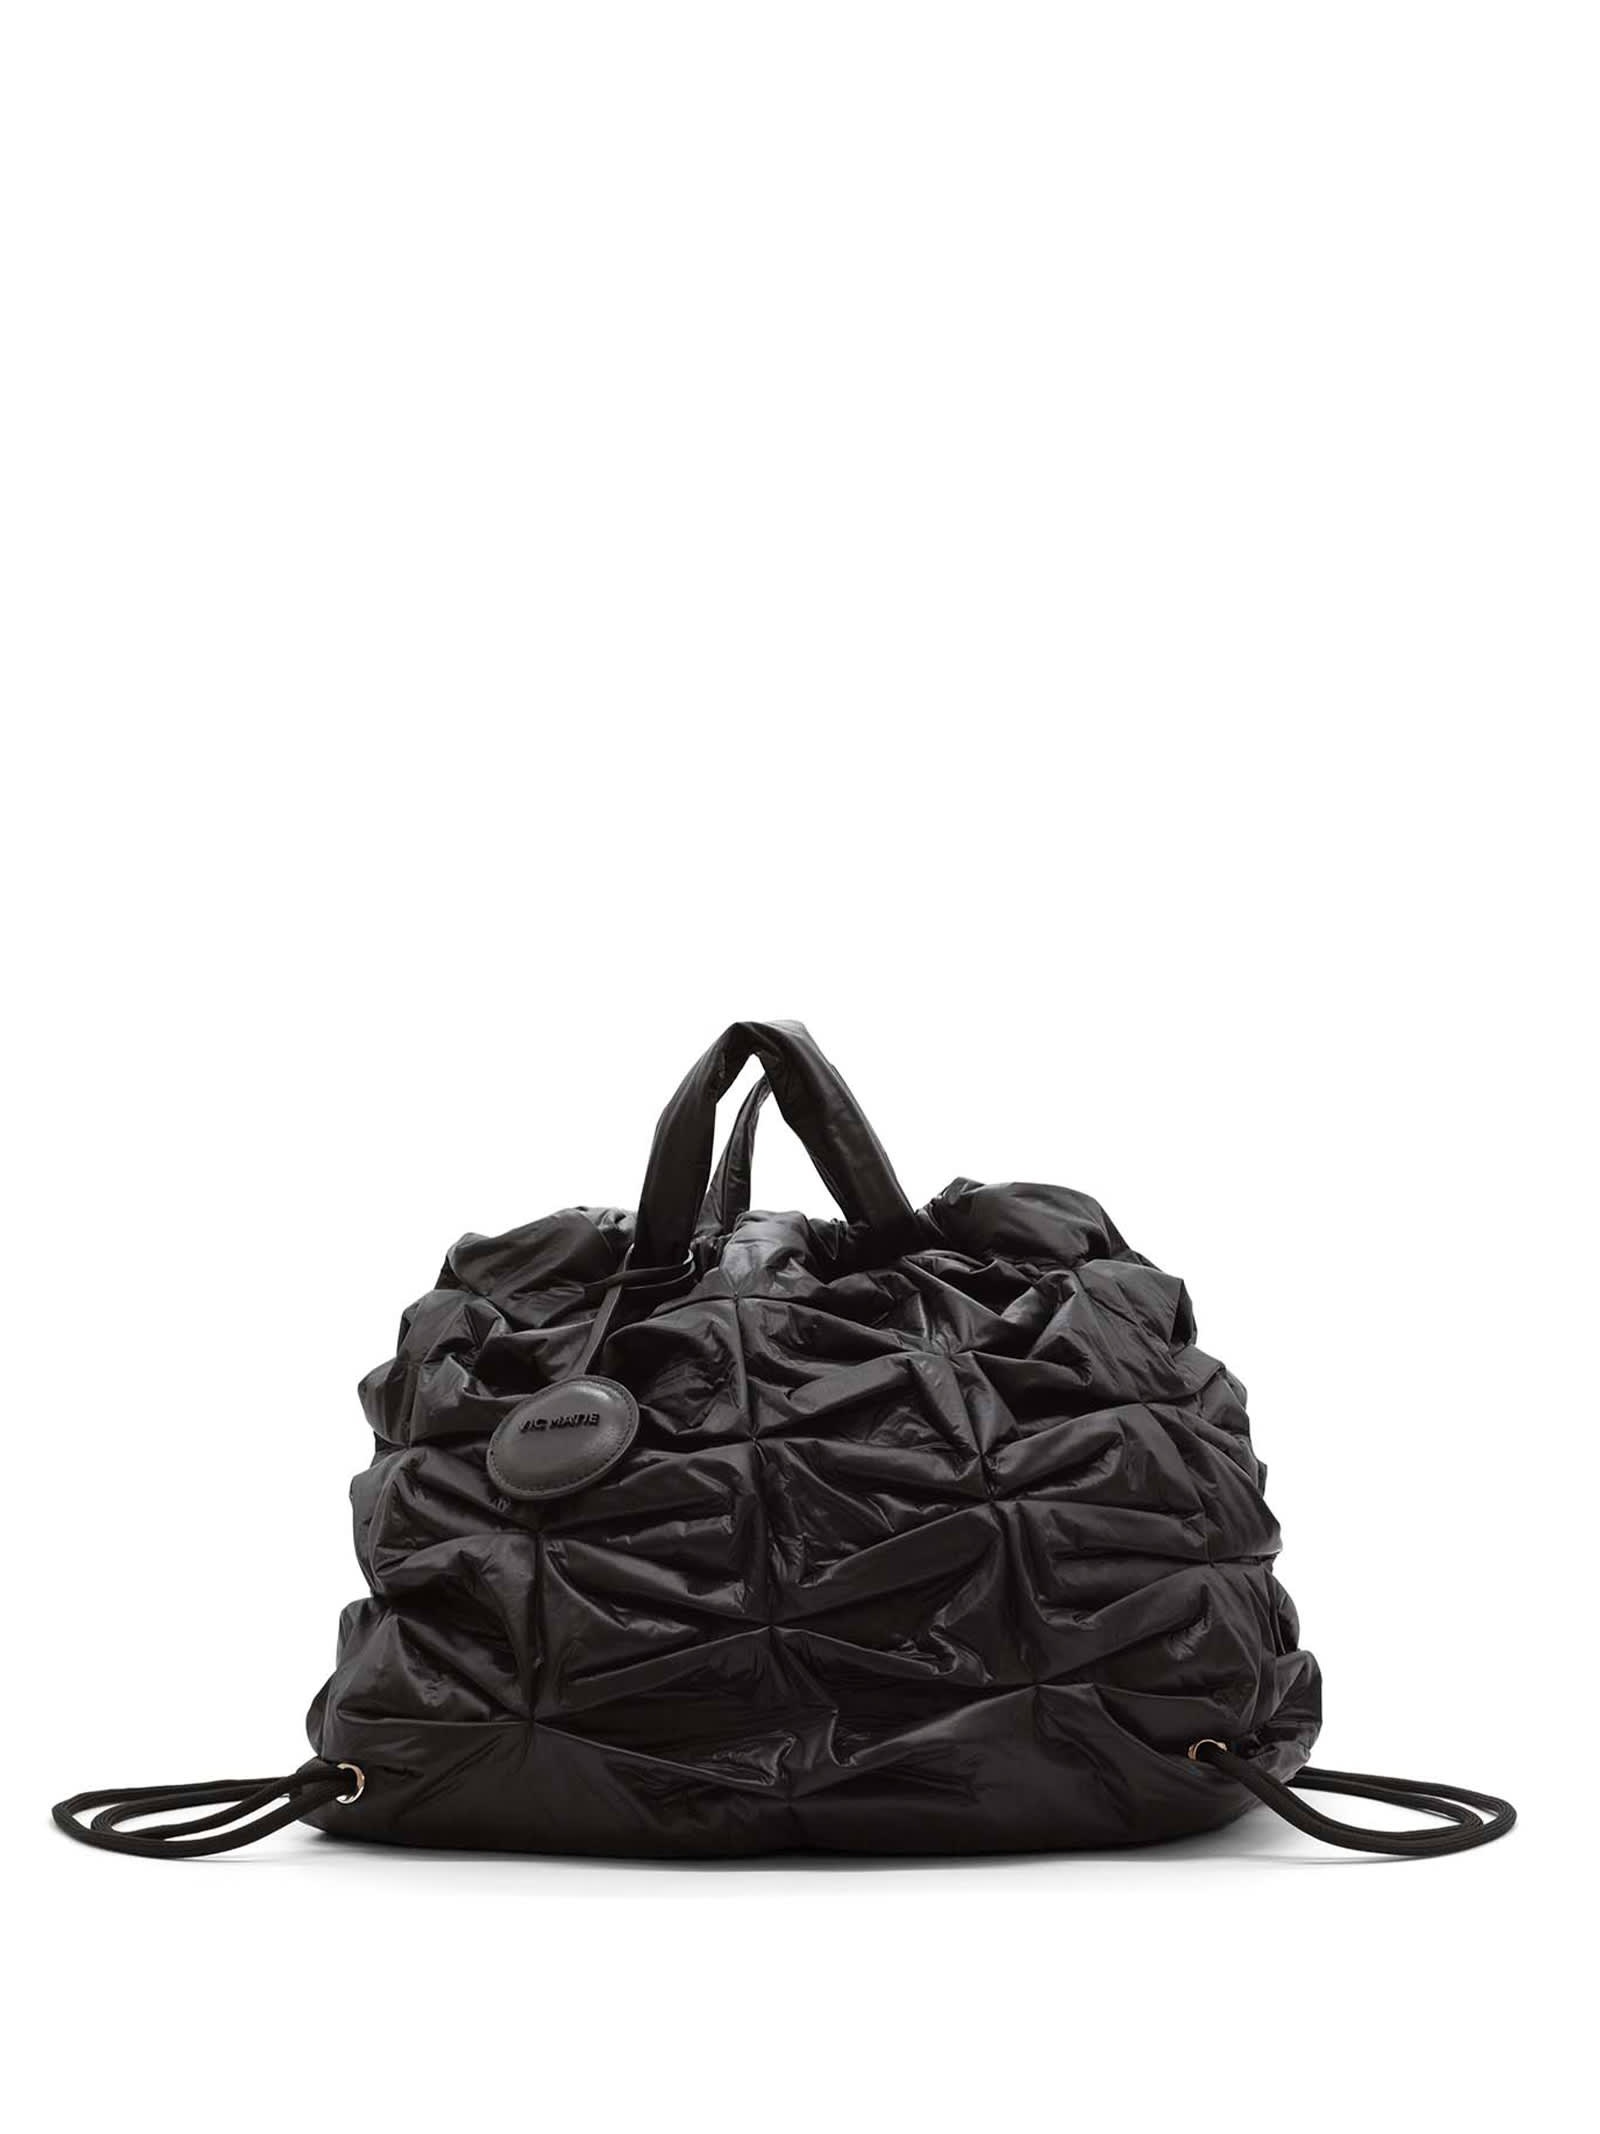 Vic Matié Large Black Nylon Handbag